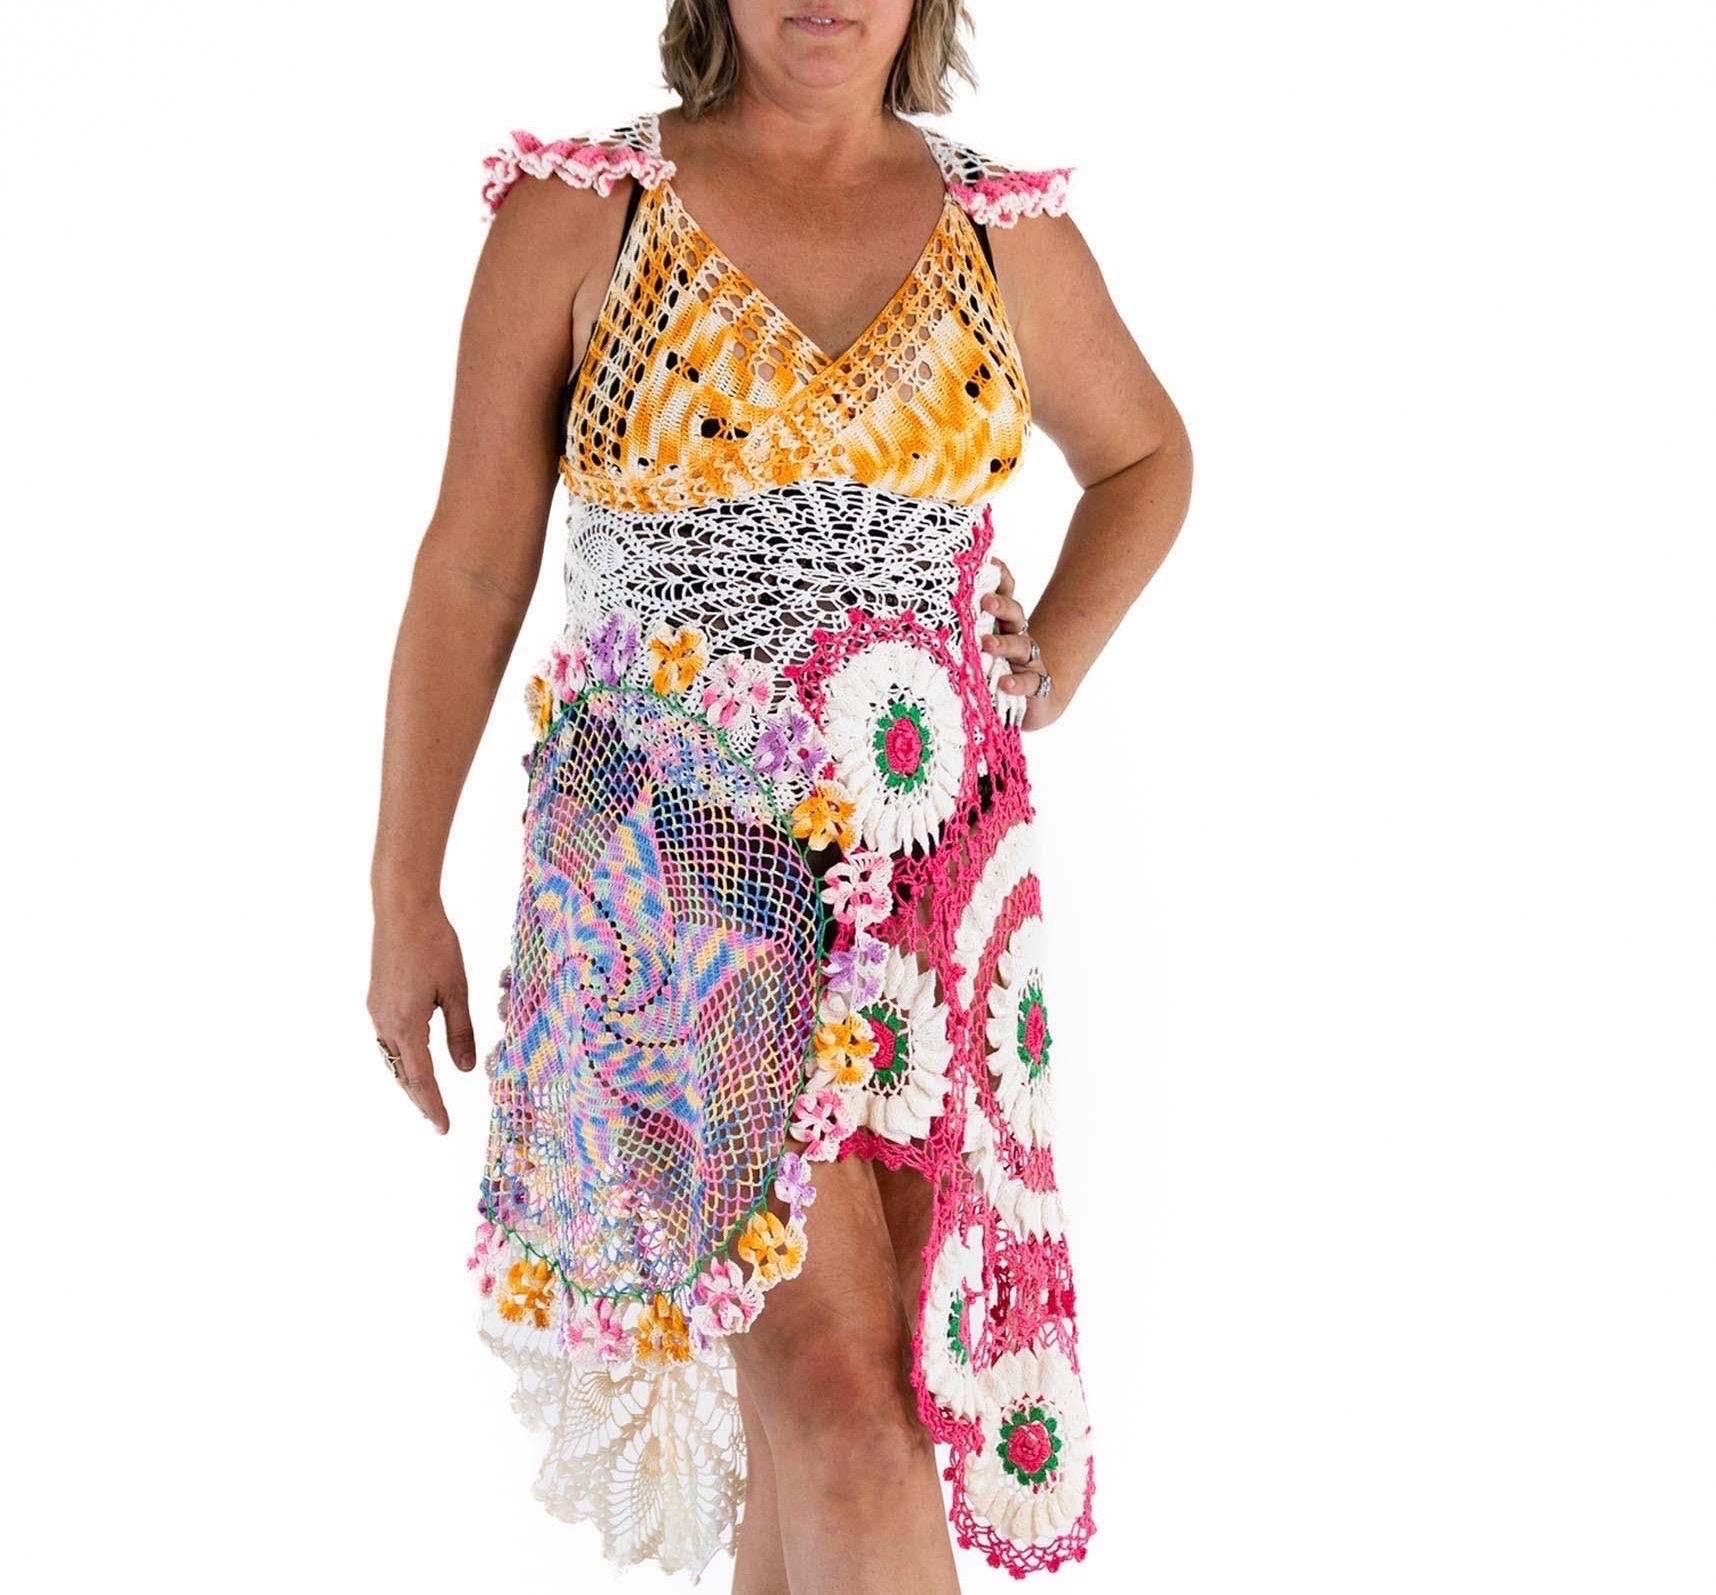 Morphew Collection Multicolor Cotton Crochet Long Vintage Doily Dress large For Sale 3